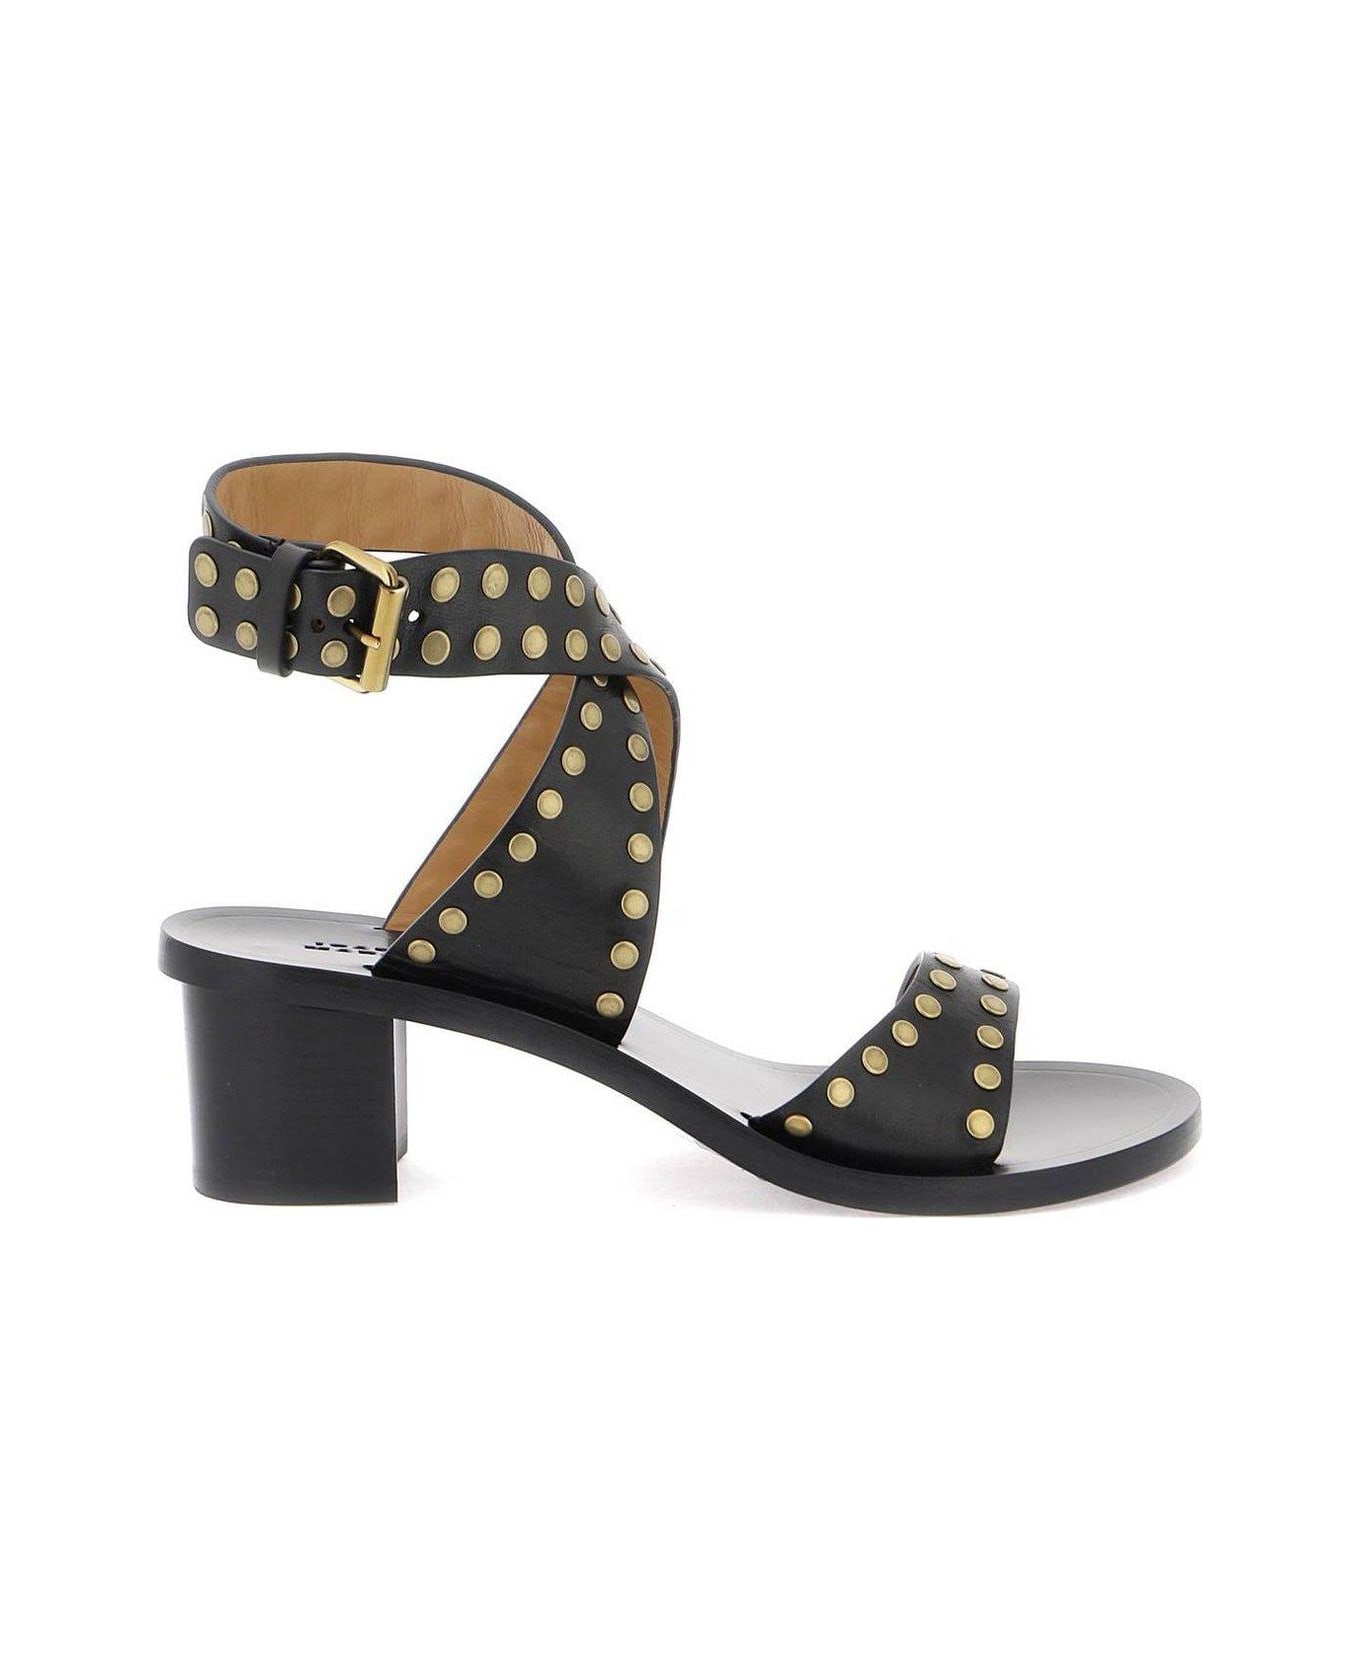 Isabel Marant Studded Heeled Sandals - Nero/oro